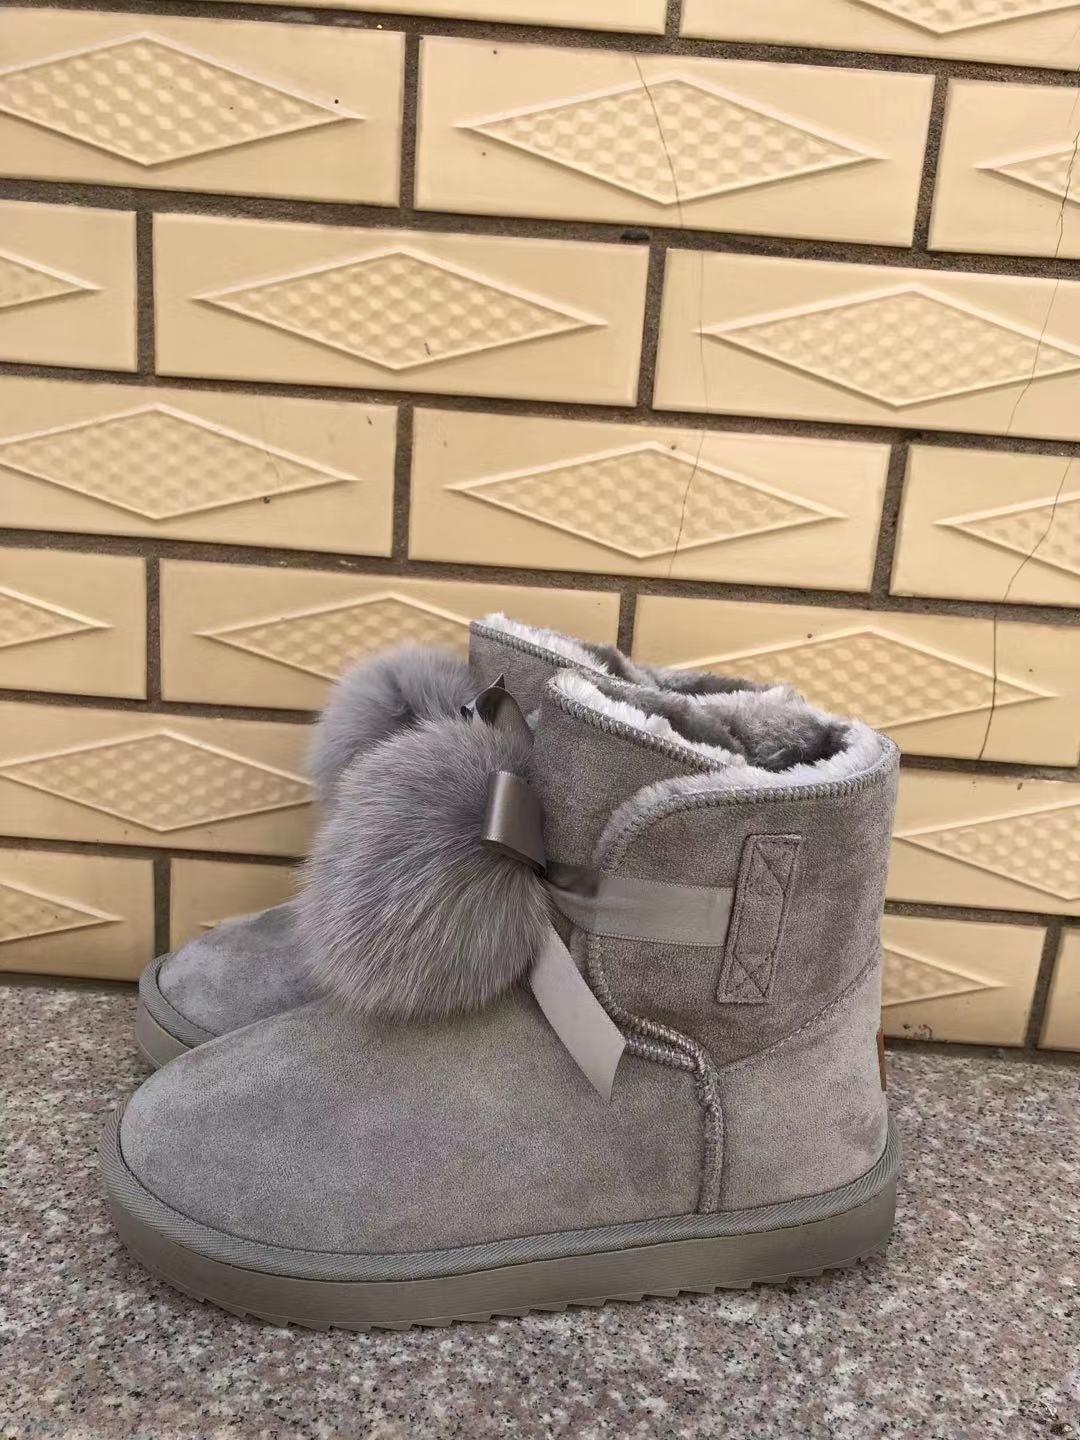 Women Snow  Flat Boots Cotton Shoes